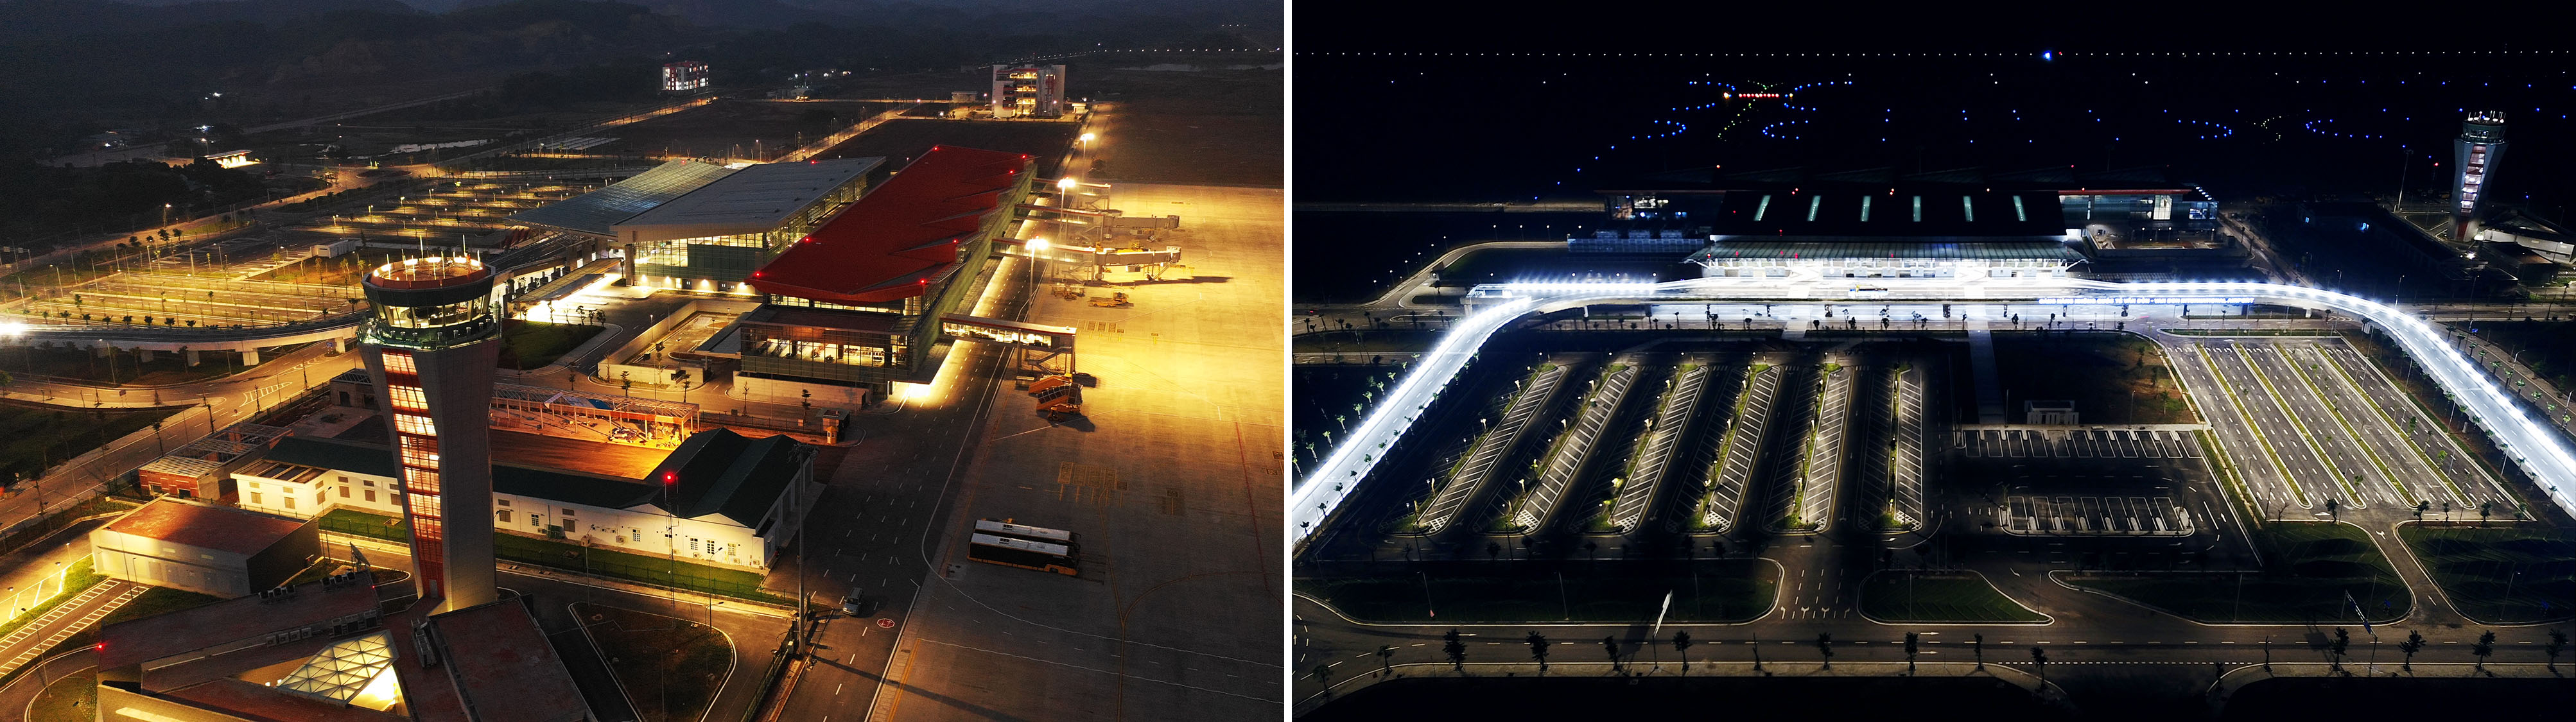 cảng hàng không quốc tế Vân đồn về đêm từ trên cao